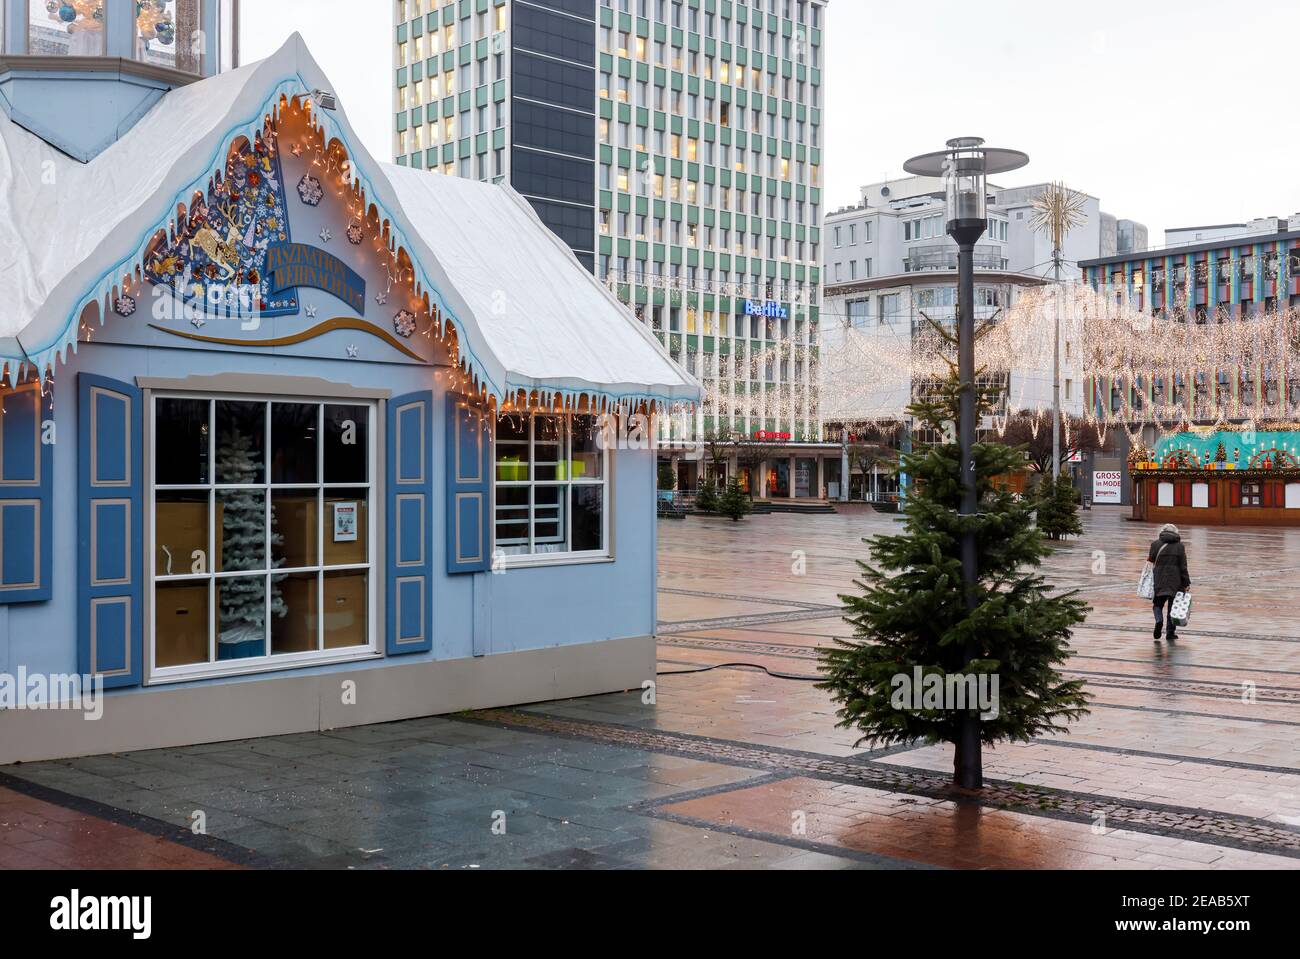 Essen, région de la Ruhr, Rhénanie-du-Nord-Westphalie, Allemagne - Essen centre-ville en temps de crise de la corona avec le deuxième verrouillage le jour avant la veille de Noël, les magasins et les quelques étals du marché de Noël sont fermés, un senior citoyen marche à travers la Kennedyplatz vide avec ses achats. Banque D'Images